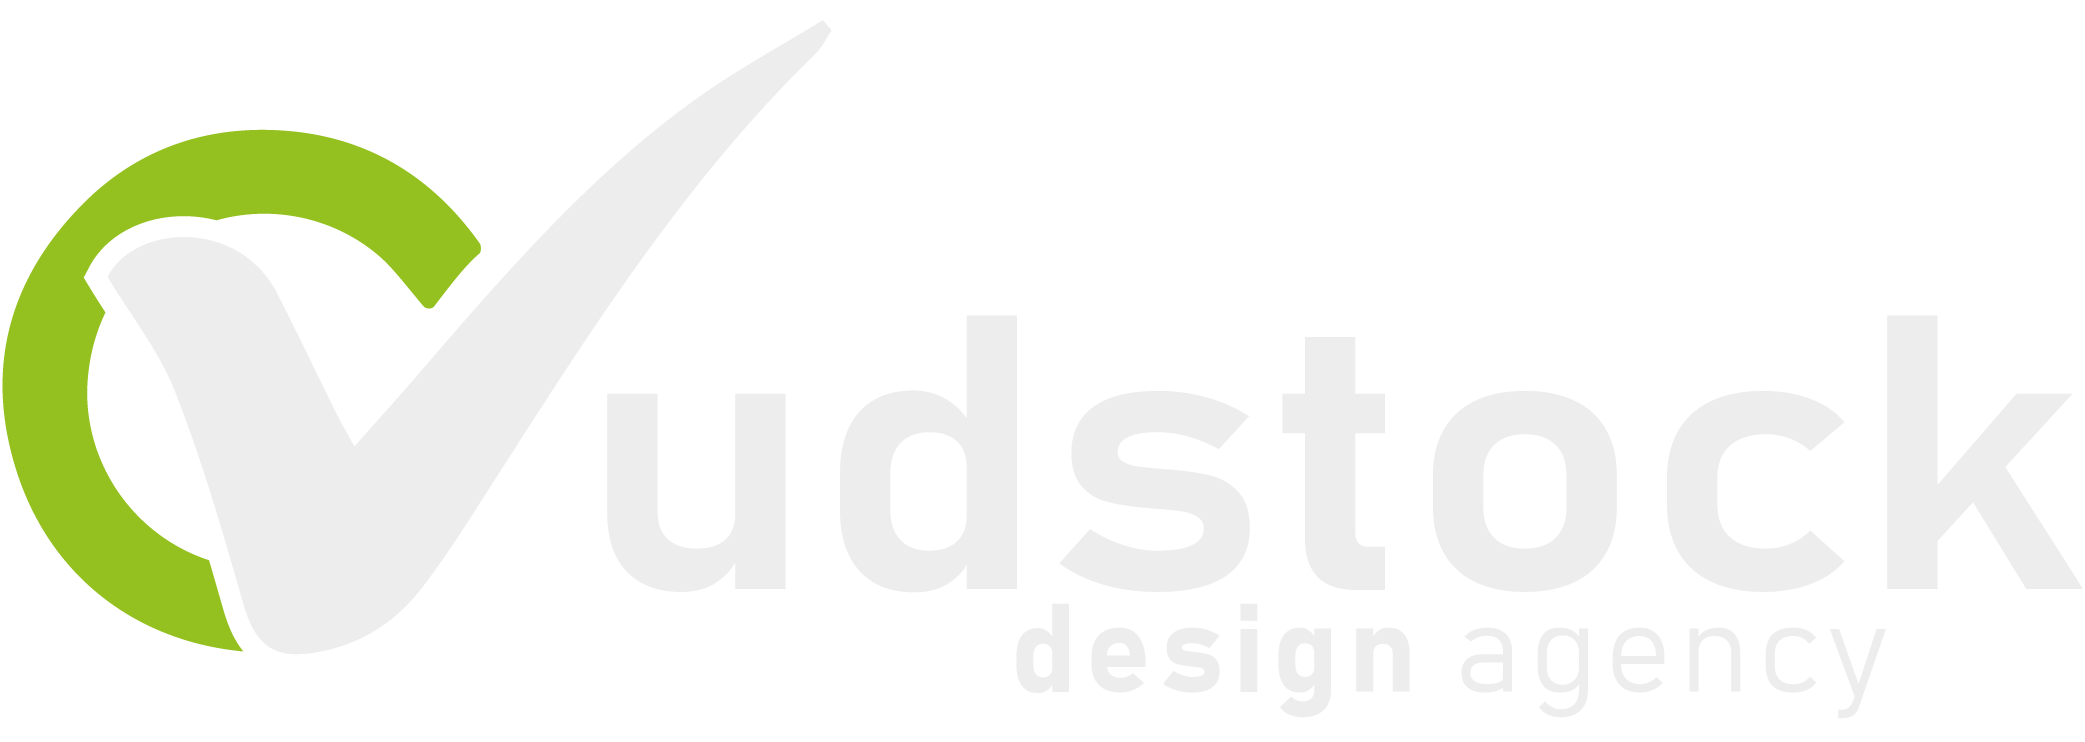 Vudstock Design Agency - Agenzia di Grafica Comunicazione e Design